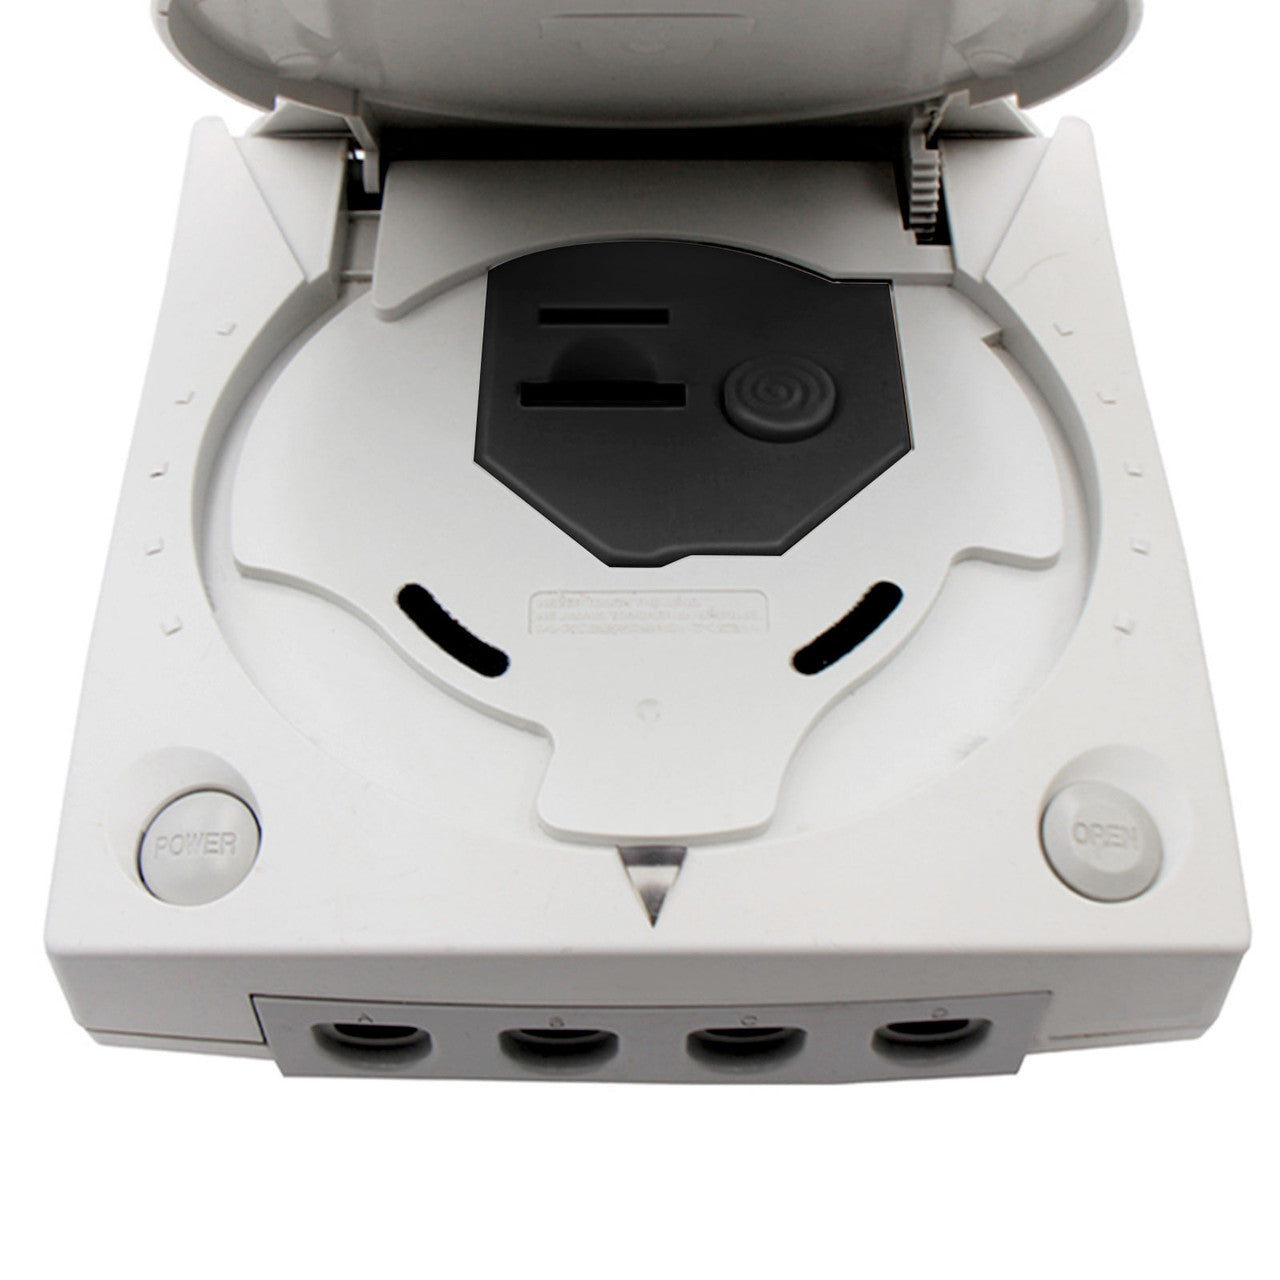 Remote Secure Digital Card 3D Printed Mount Kit for Sega Dreamcast Console, Black